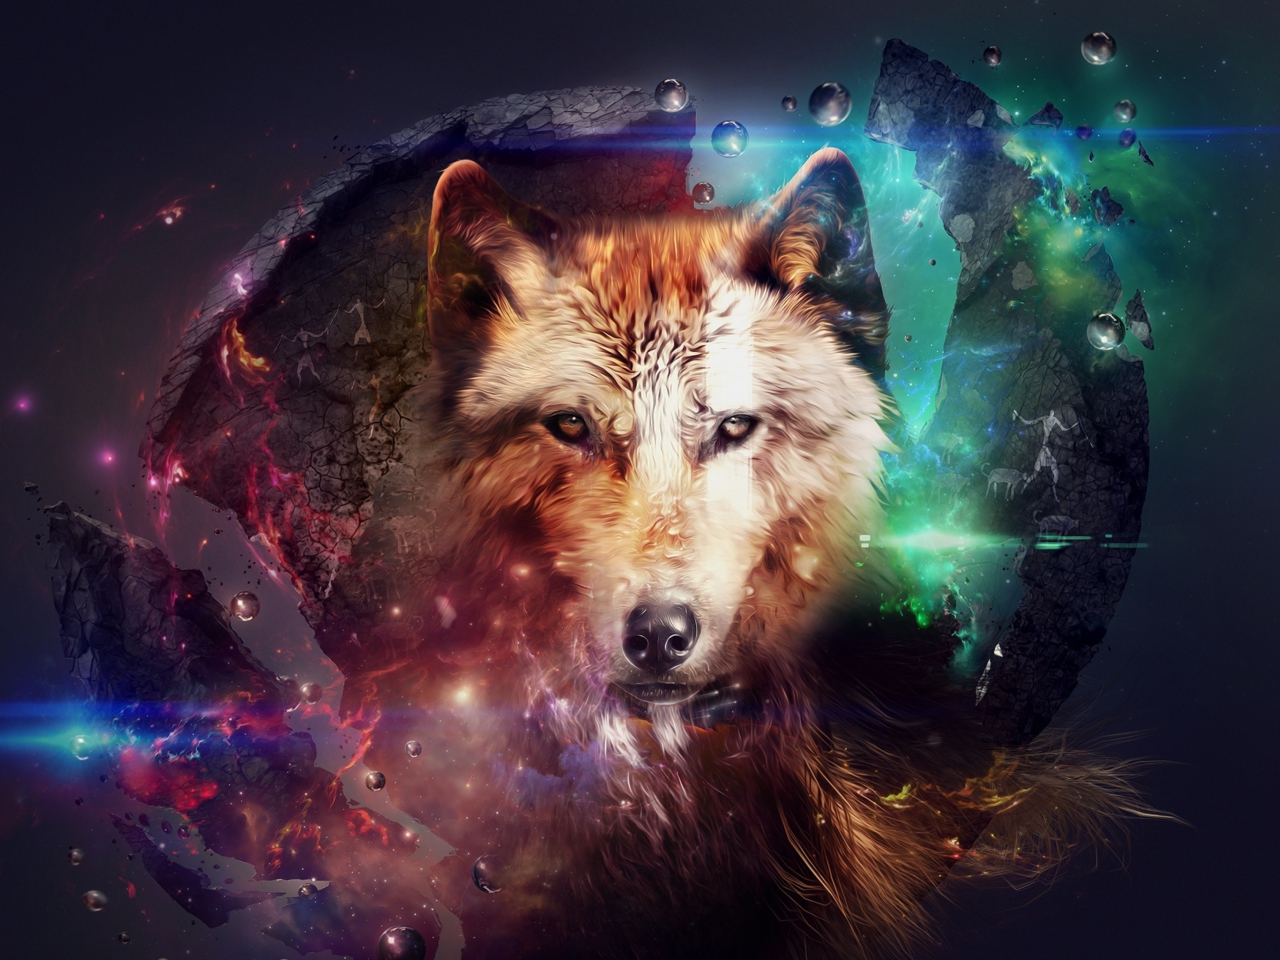 Magic Wolf wallpaper 1280x960